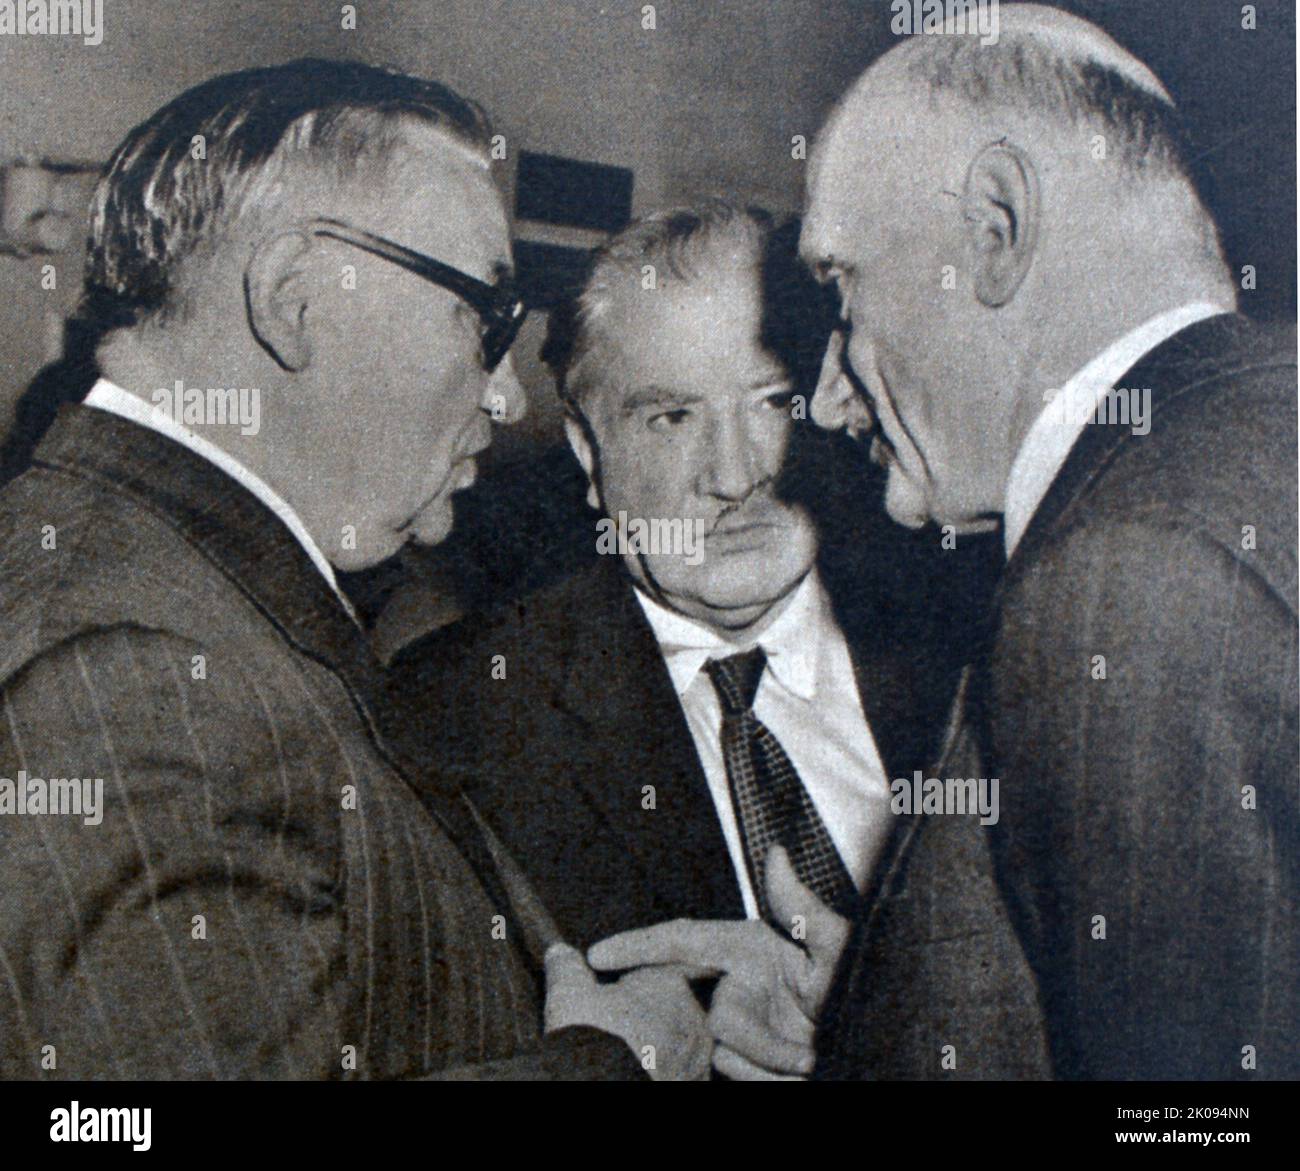 Neunundfünfzig Nationen auf Flushing Meadow. New York, 1949. Ernest Bevin (links), Robert Schuman (rechts) und M. Bech (Luxemburg) (Mitte). Stockfoto